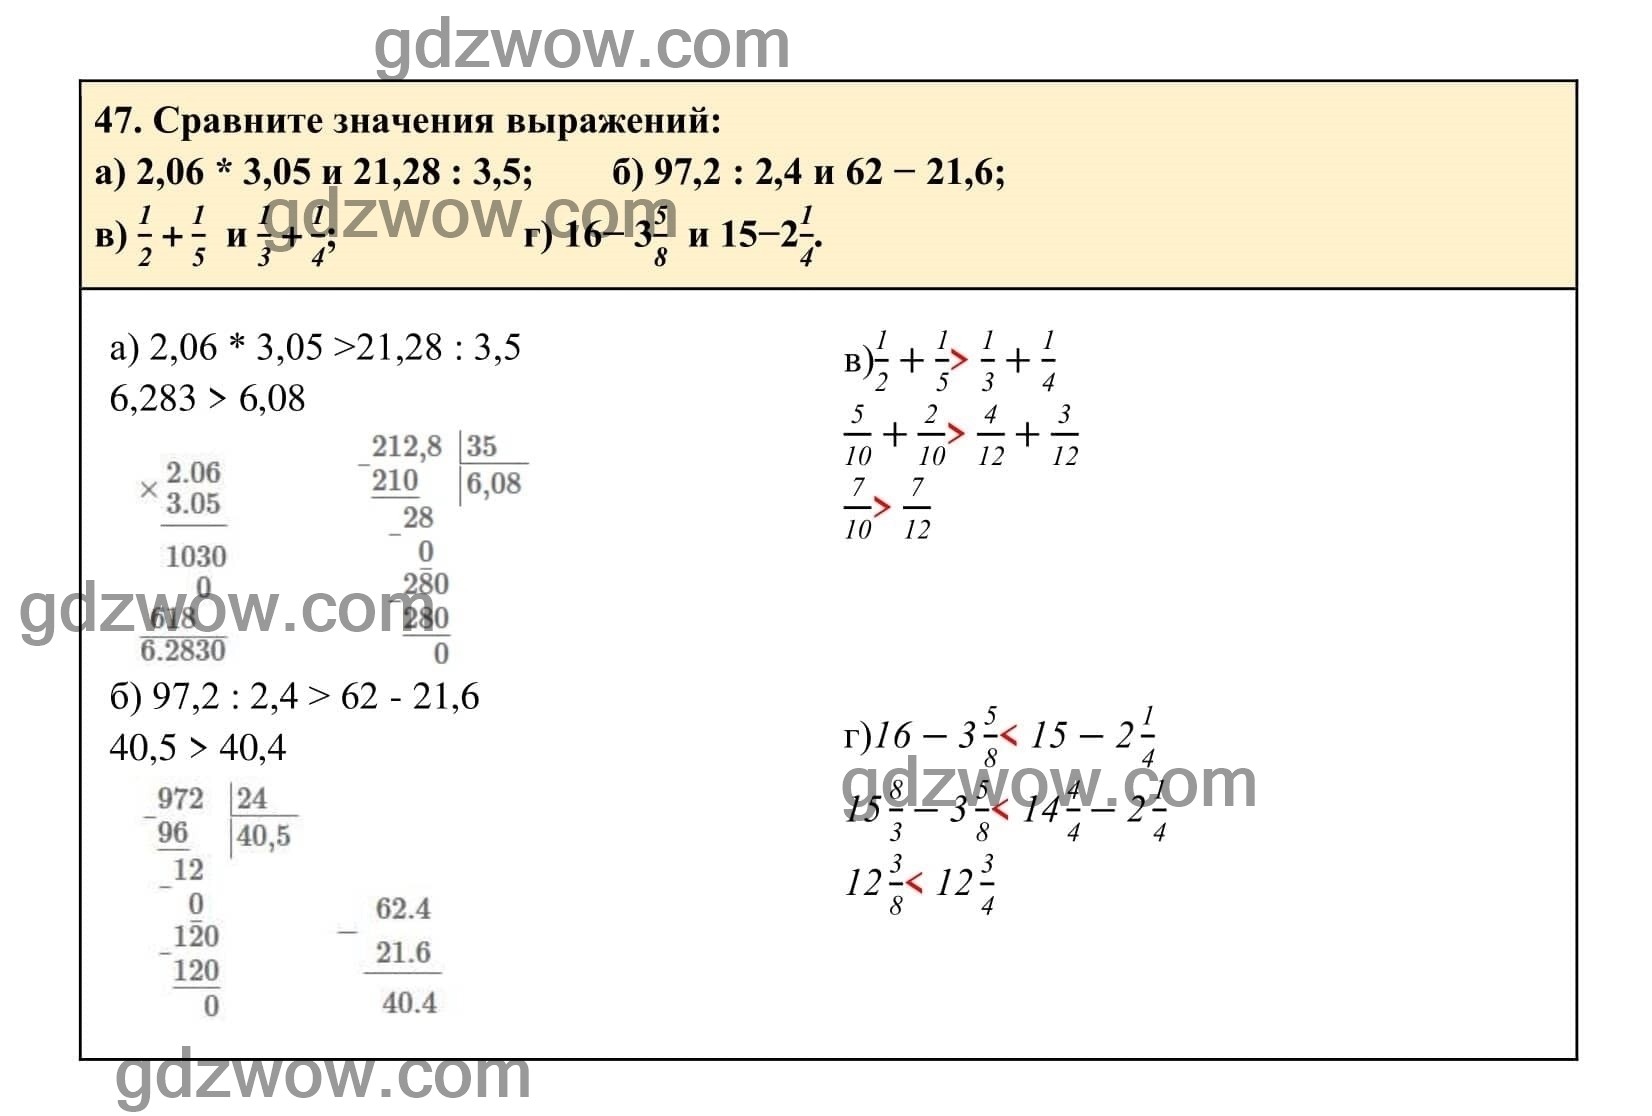 Упражнение 47 - ГДЗ по Алгебре 7 класс Учебник Макарычев (решебник) - GDZwow